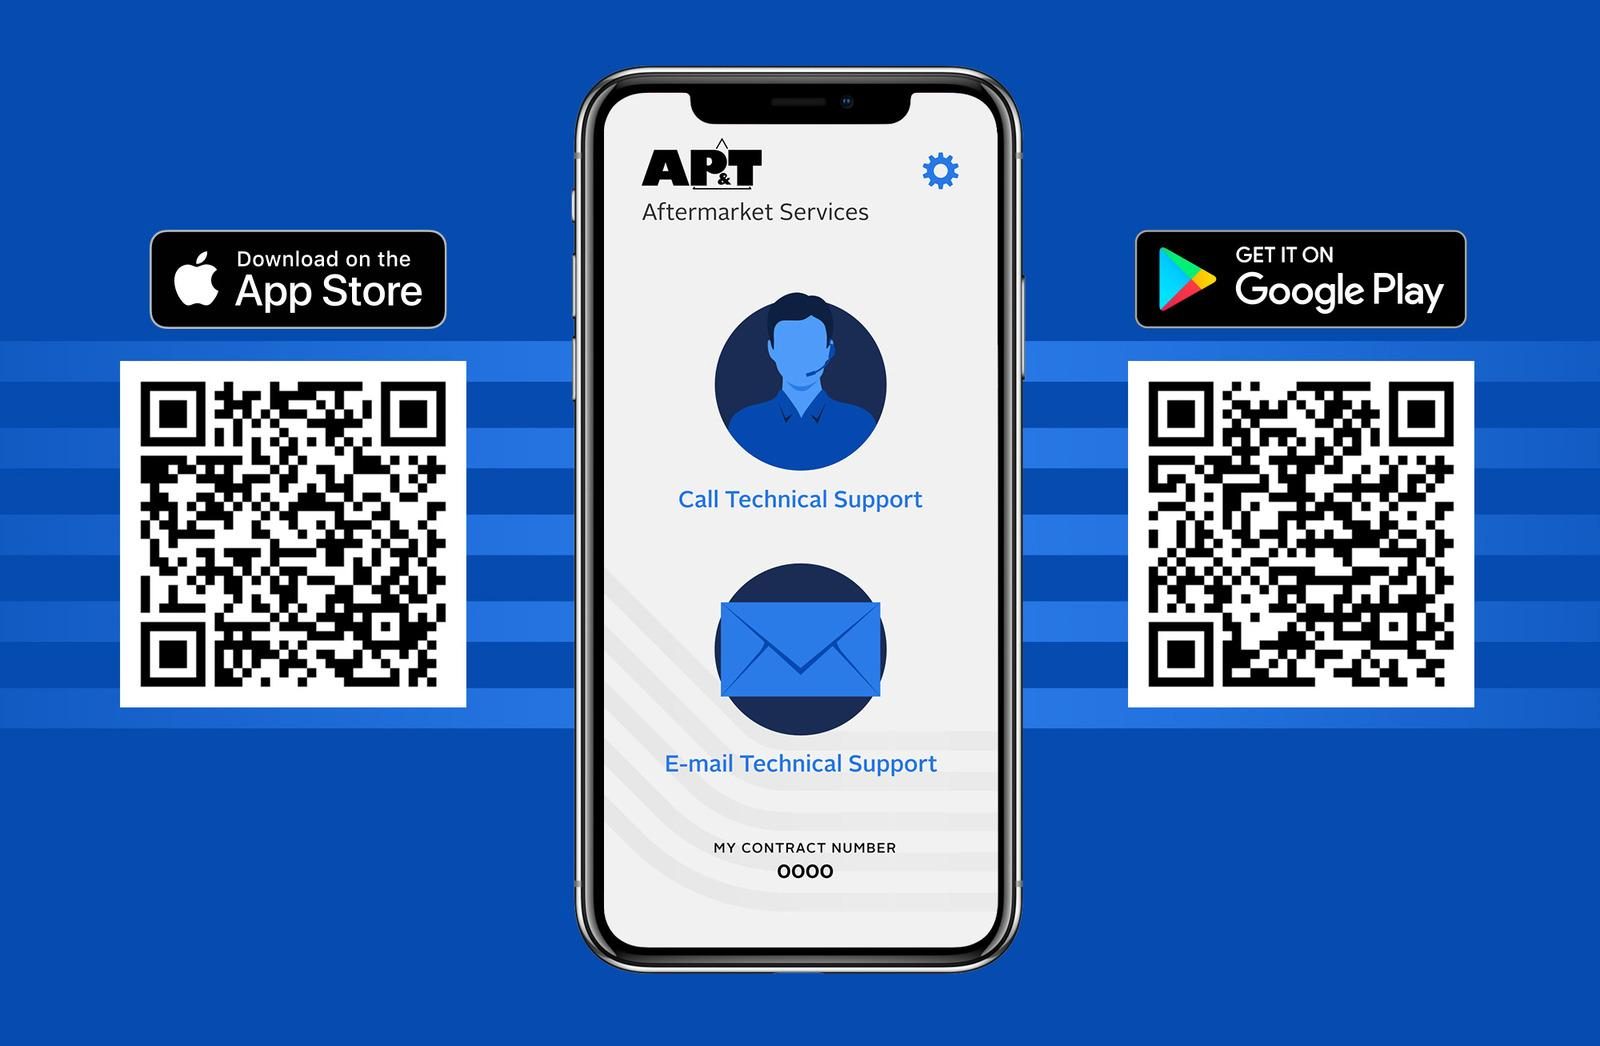 Die neue AP&T Aftermarket Services App ist im App Store und bei Google Play als Download verfügbar.